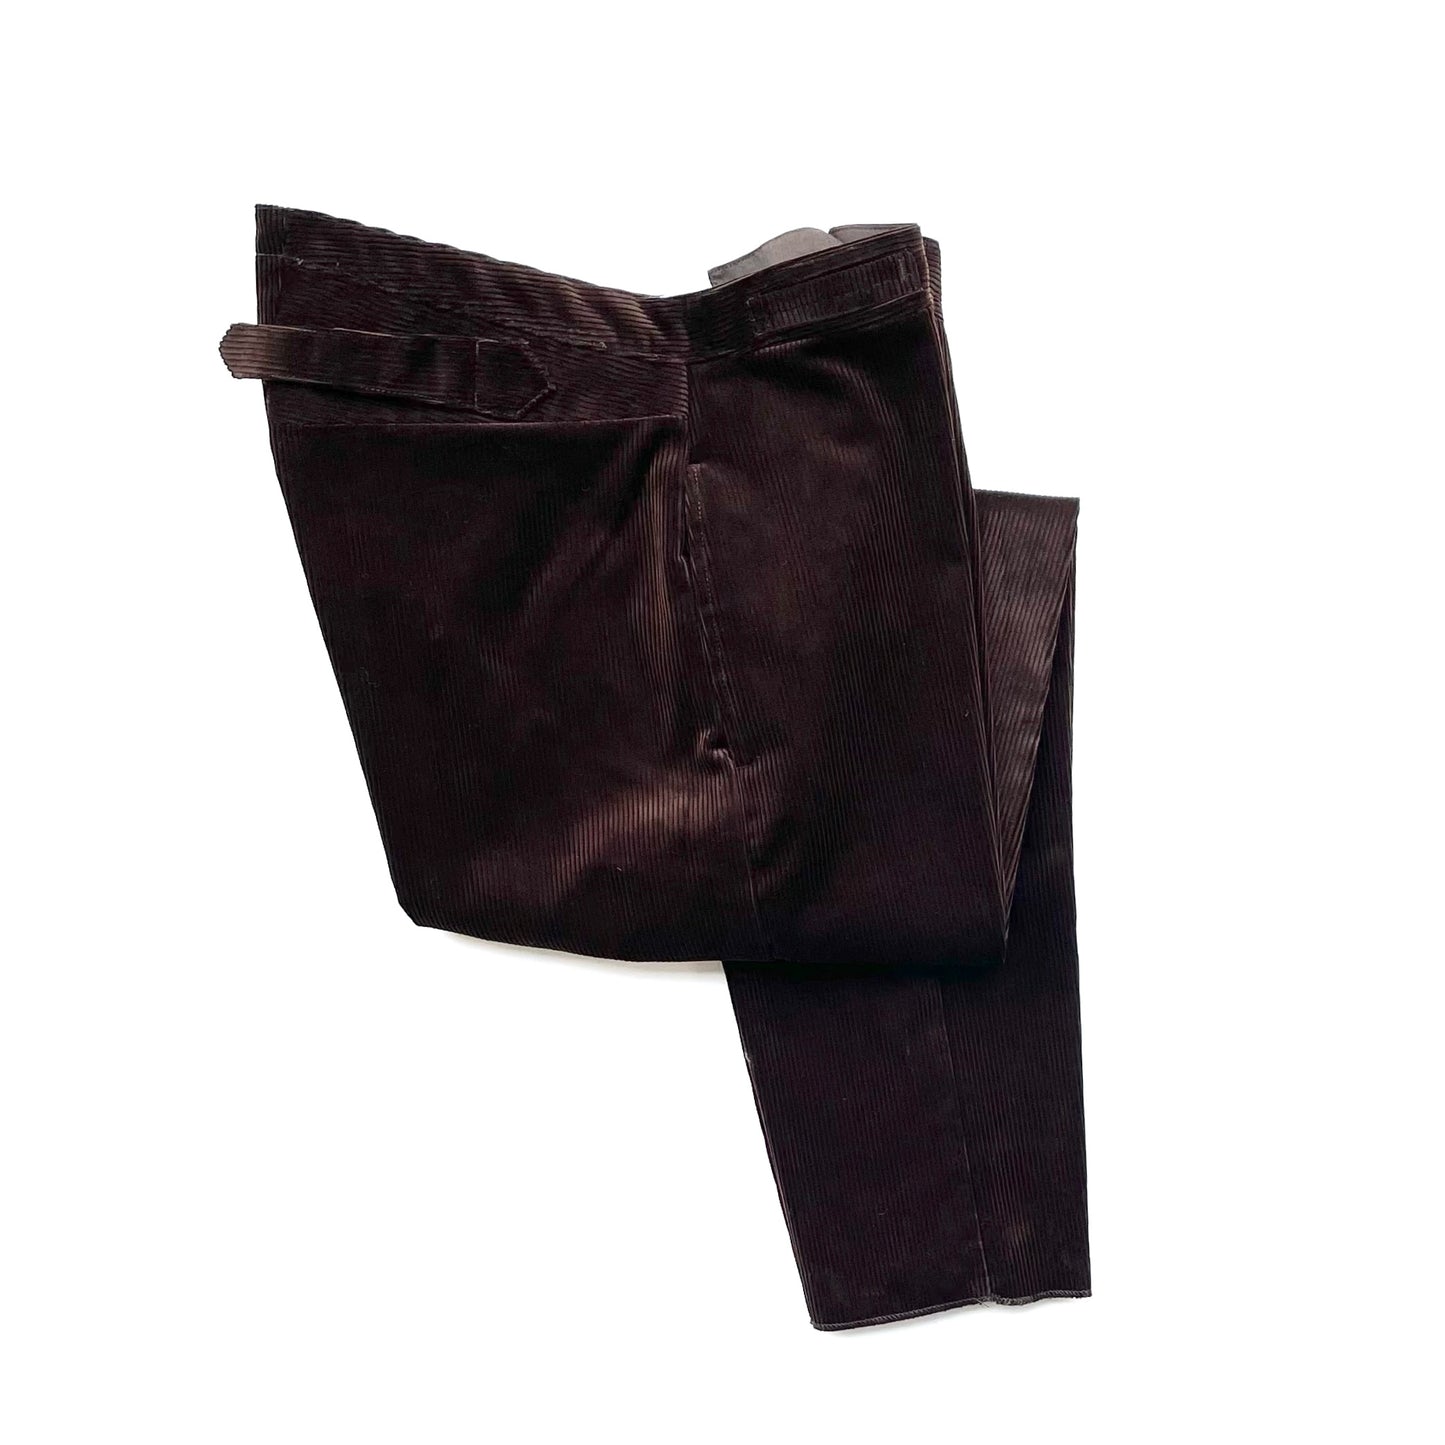 1915 pantalones / pana de pana inglesa marrón